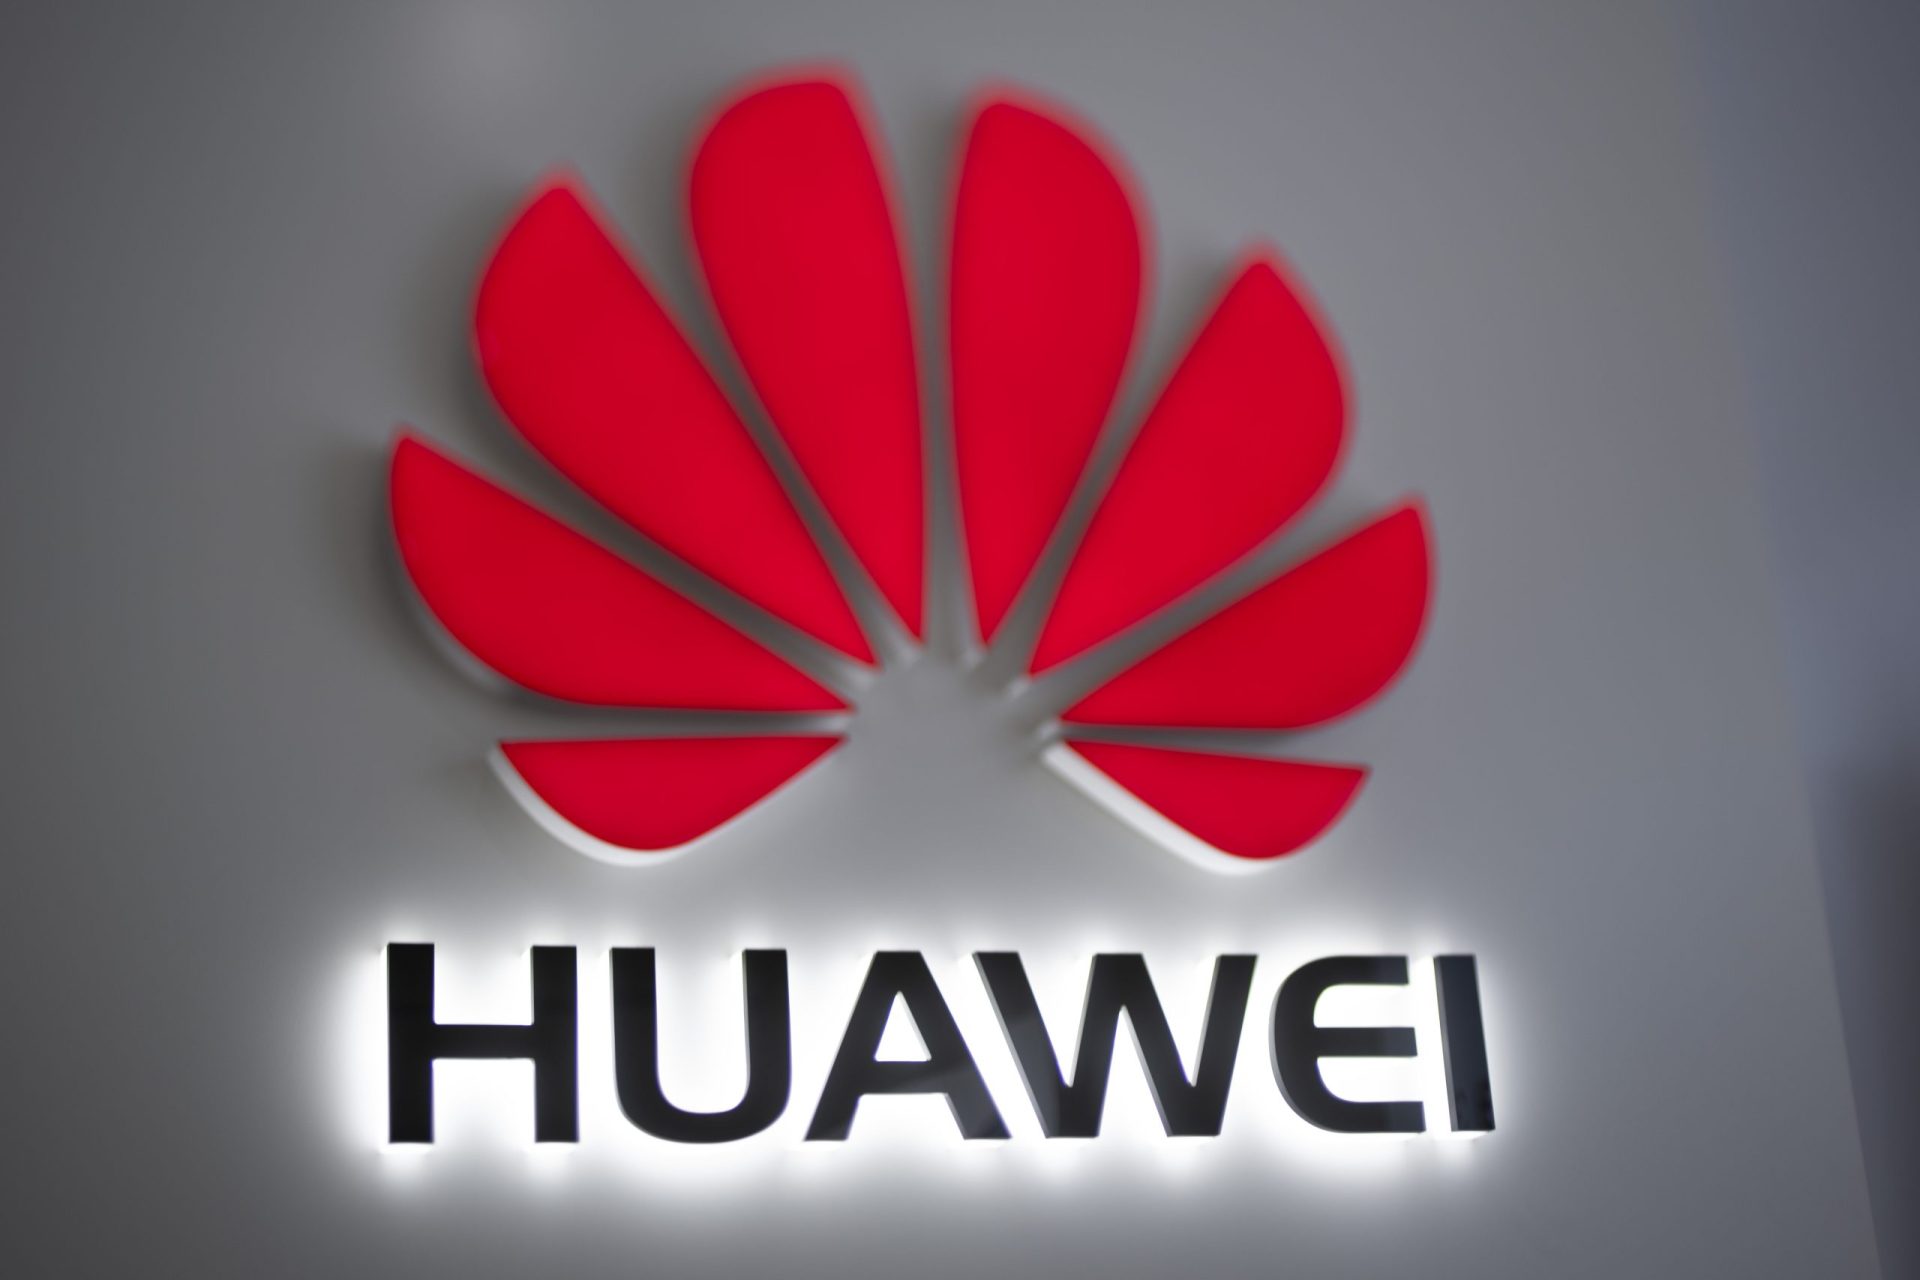 Diretora financeira da Huawei detida no Canadá. China pede libertação imediata